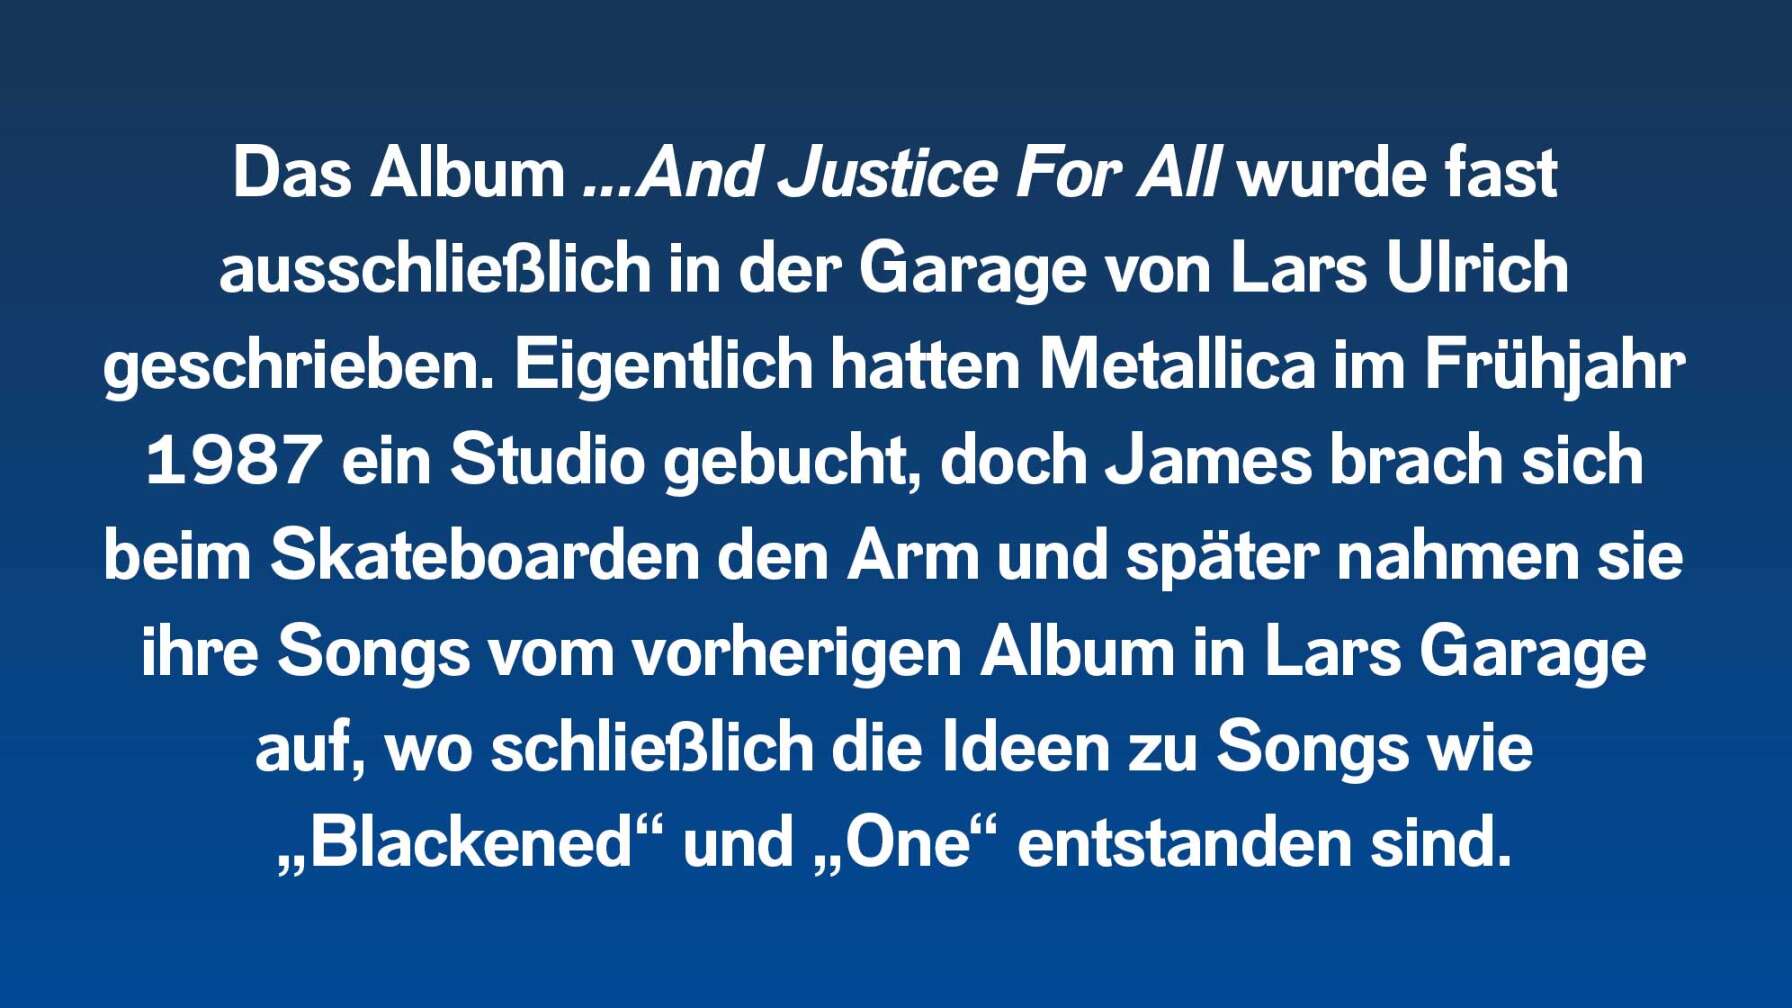 Das Album wurde fast ausschließlich in der Garage von Lars Ulrich geschrieben. Eigentlich hatten Metallica im Frühjahr 1987 ein Studio gebucht, doch James brach sich beim Skateboarden den Arm und später nahmen sie ihre Songs in Lars Garage auf, wo schließlich auch Songs wie „Blackened“ und „One“ entstanden sind.